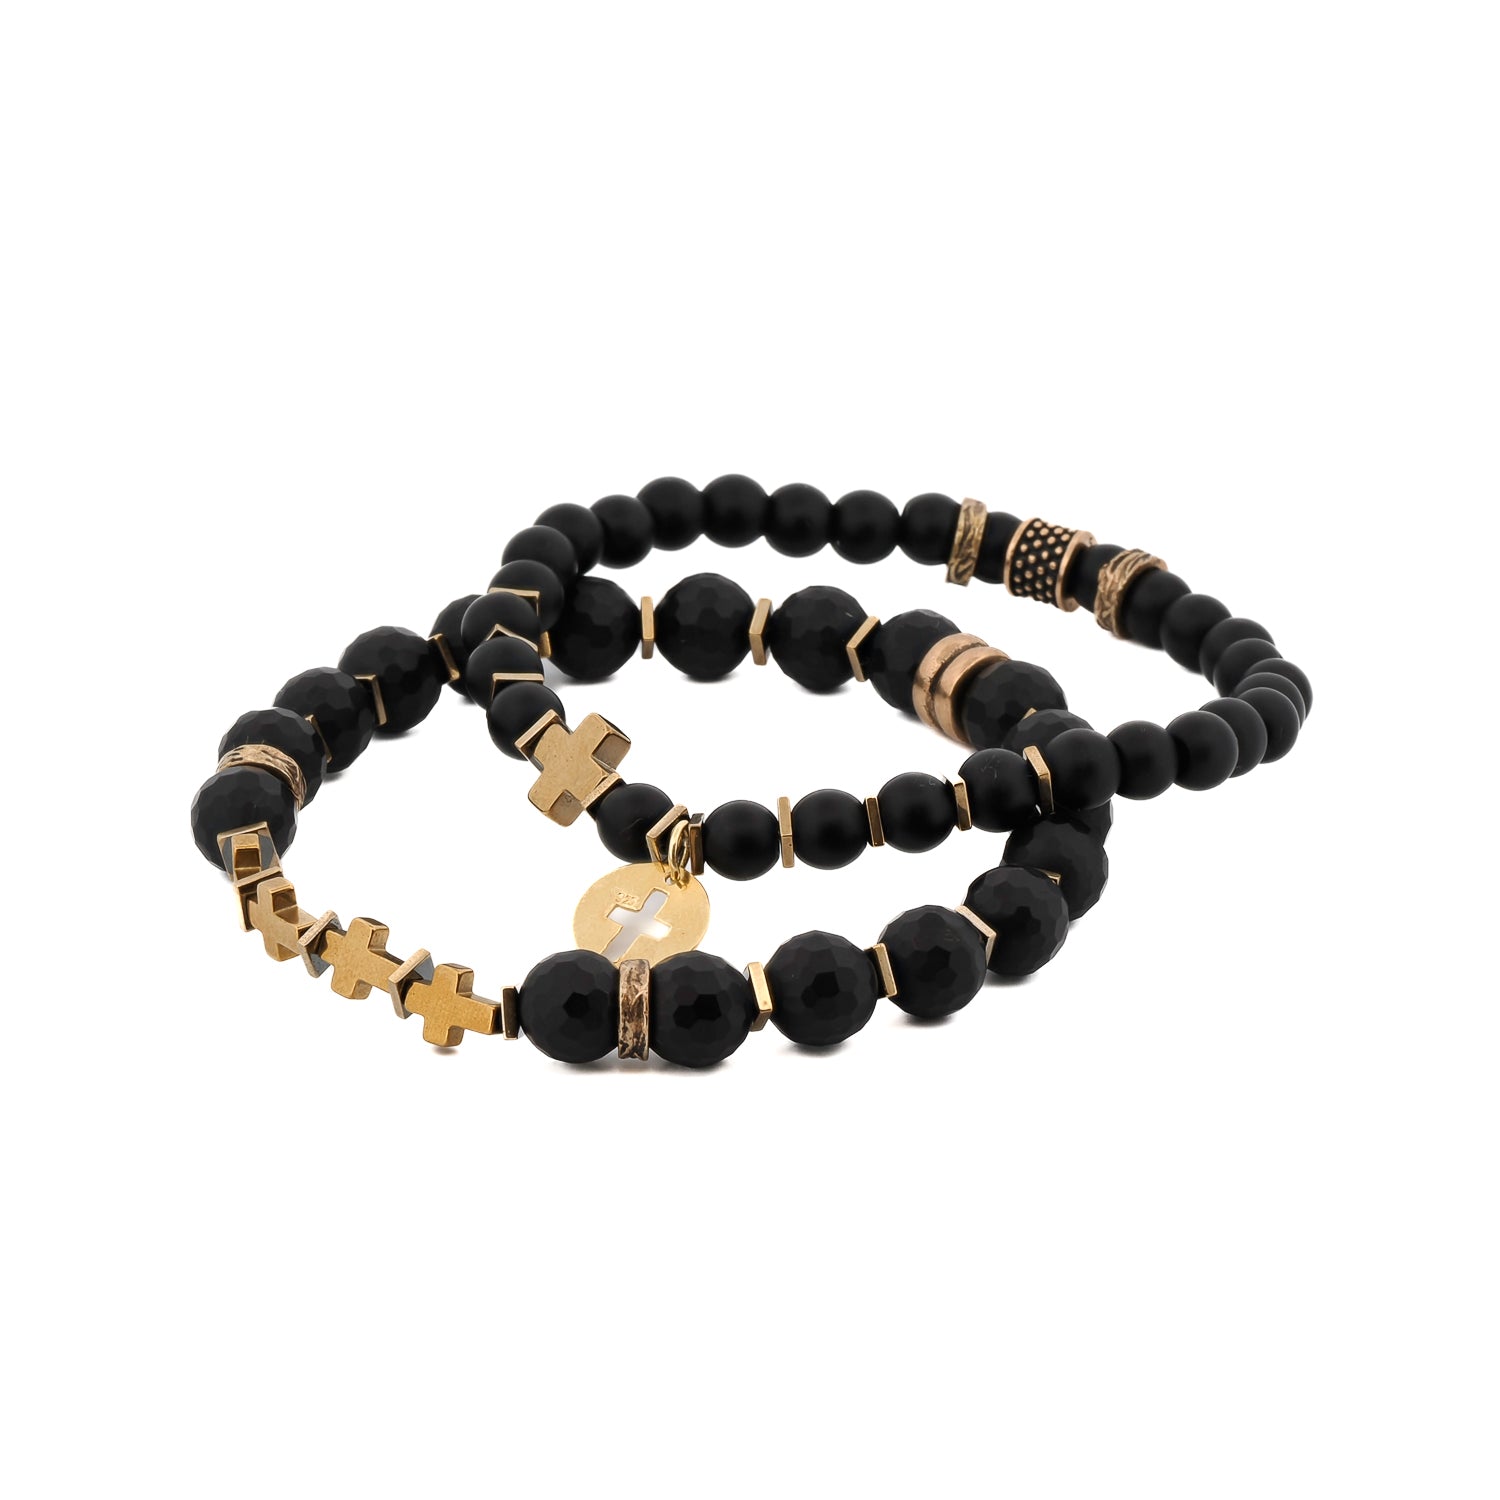 Matte Black Onyx Stone Gold Cross Charm Wise Belief Bracelet Set